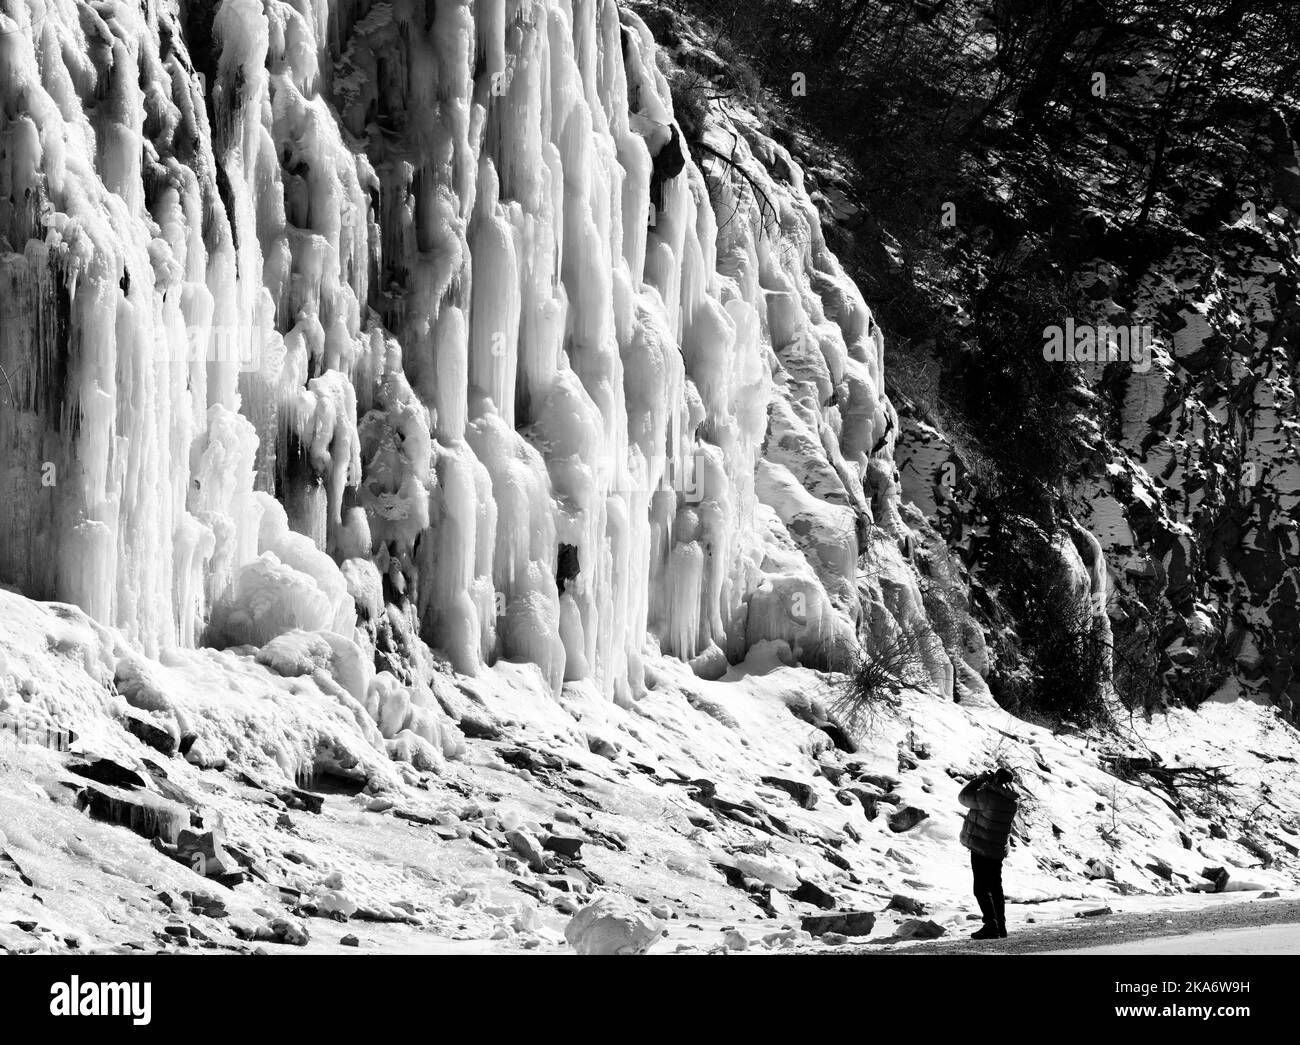 L'homme fait une photo de la cascade de montagne glacée à un beau jour de soleil. Hiver en Géorgie. Image en noir et blanc. Banque D'Images